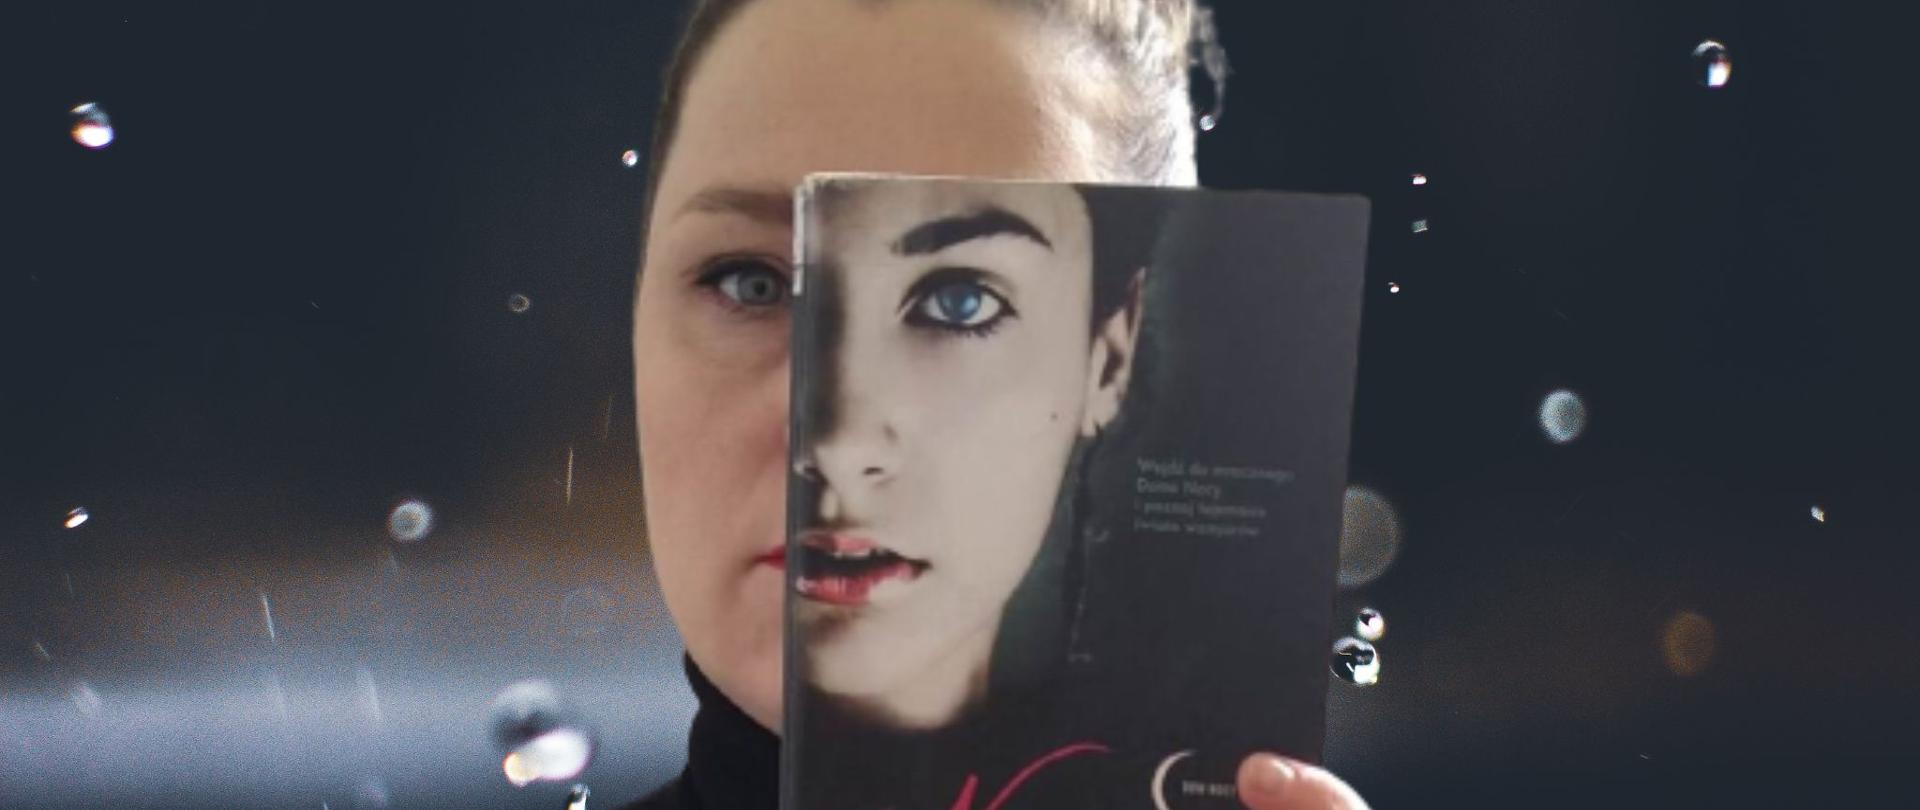 Konkurs fotograficzny „Sleeveface - ubierz się w książkę”